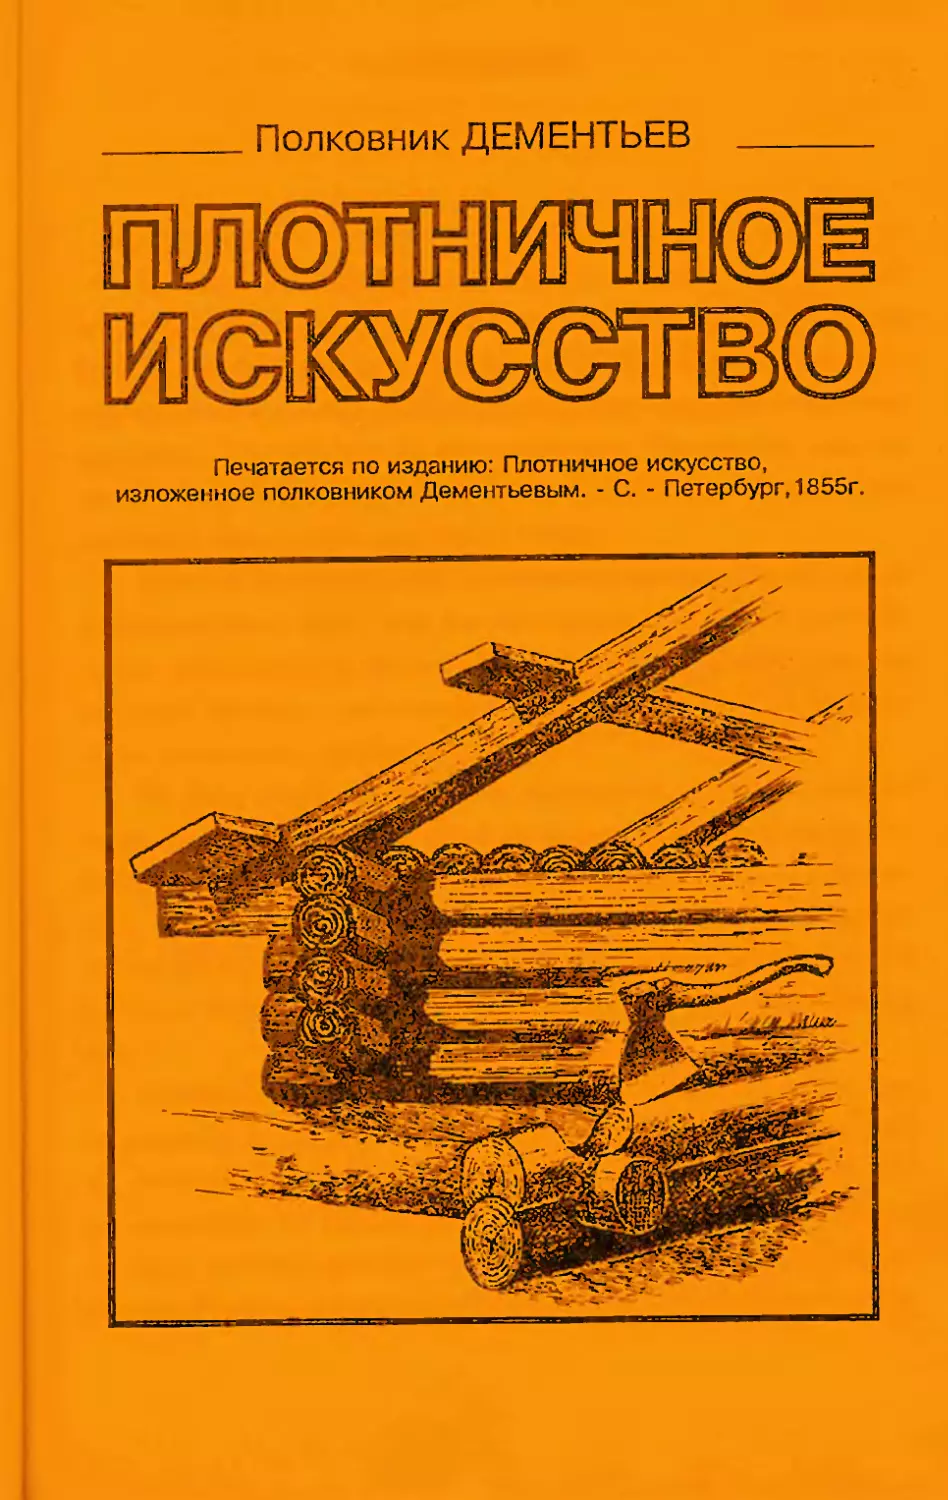 Дементьев а.а. Плотничное искусство, 1902 г.